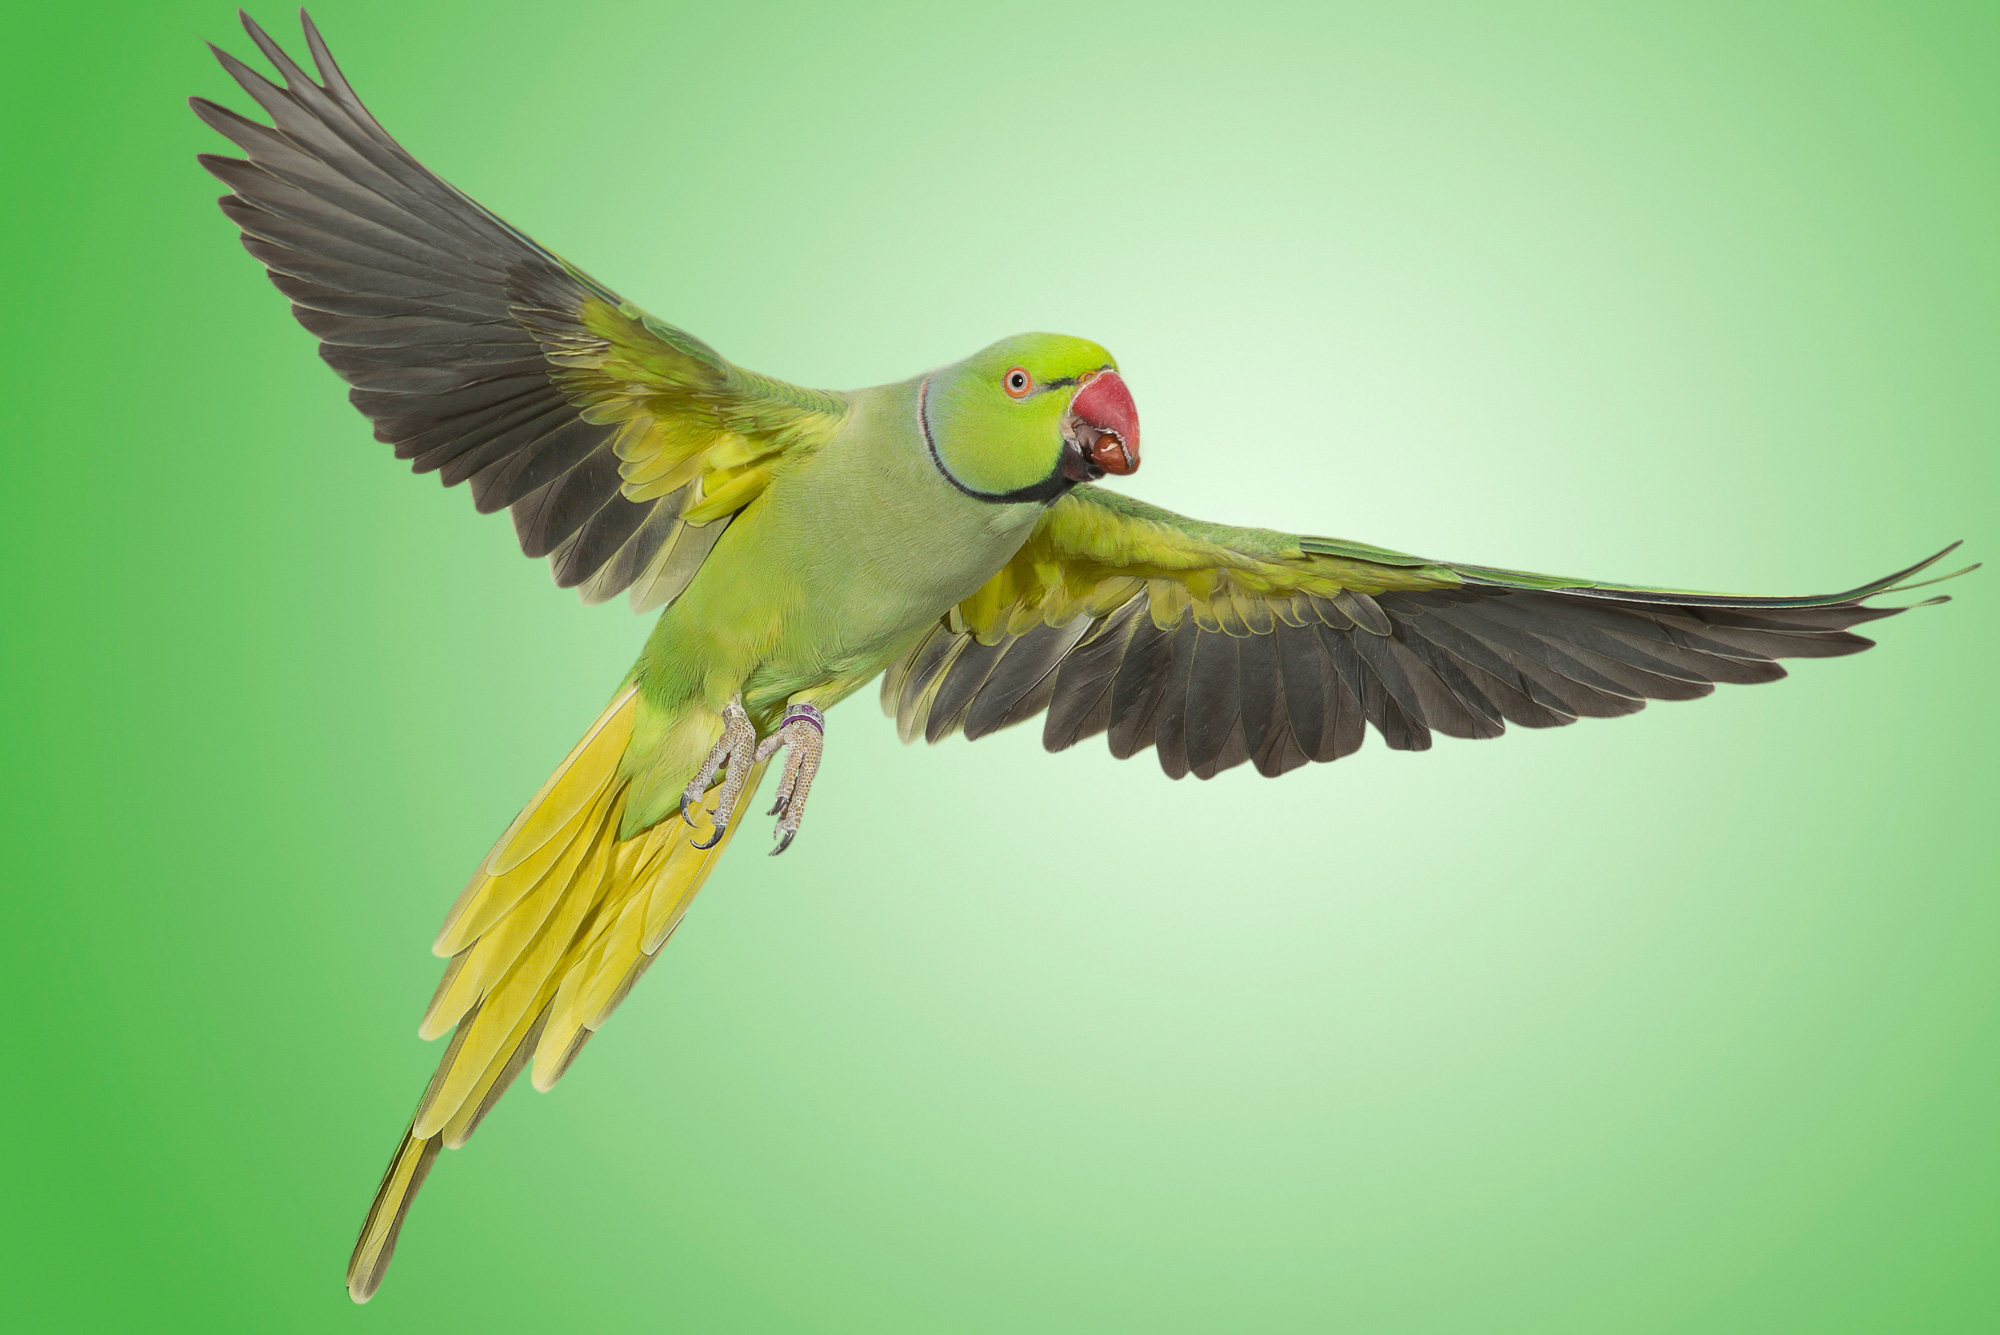 A Nicaraguan green parakeet in flight